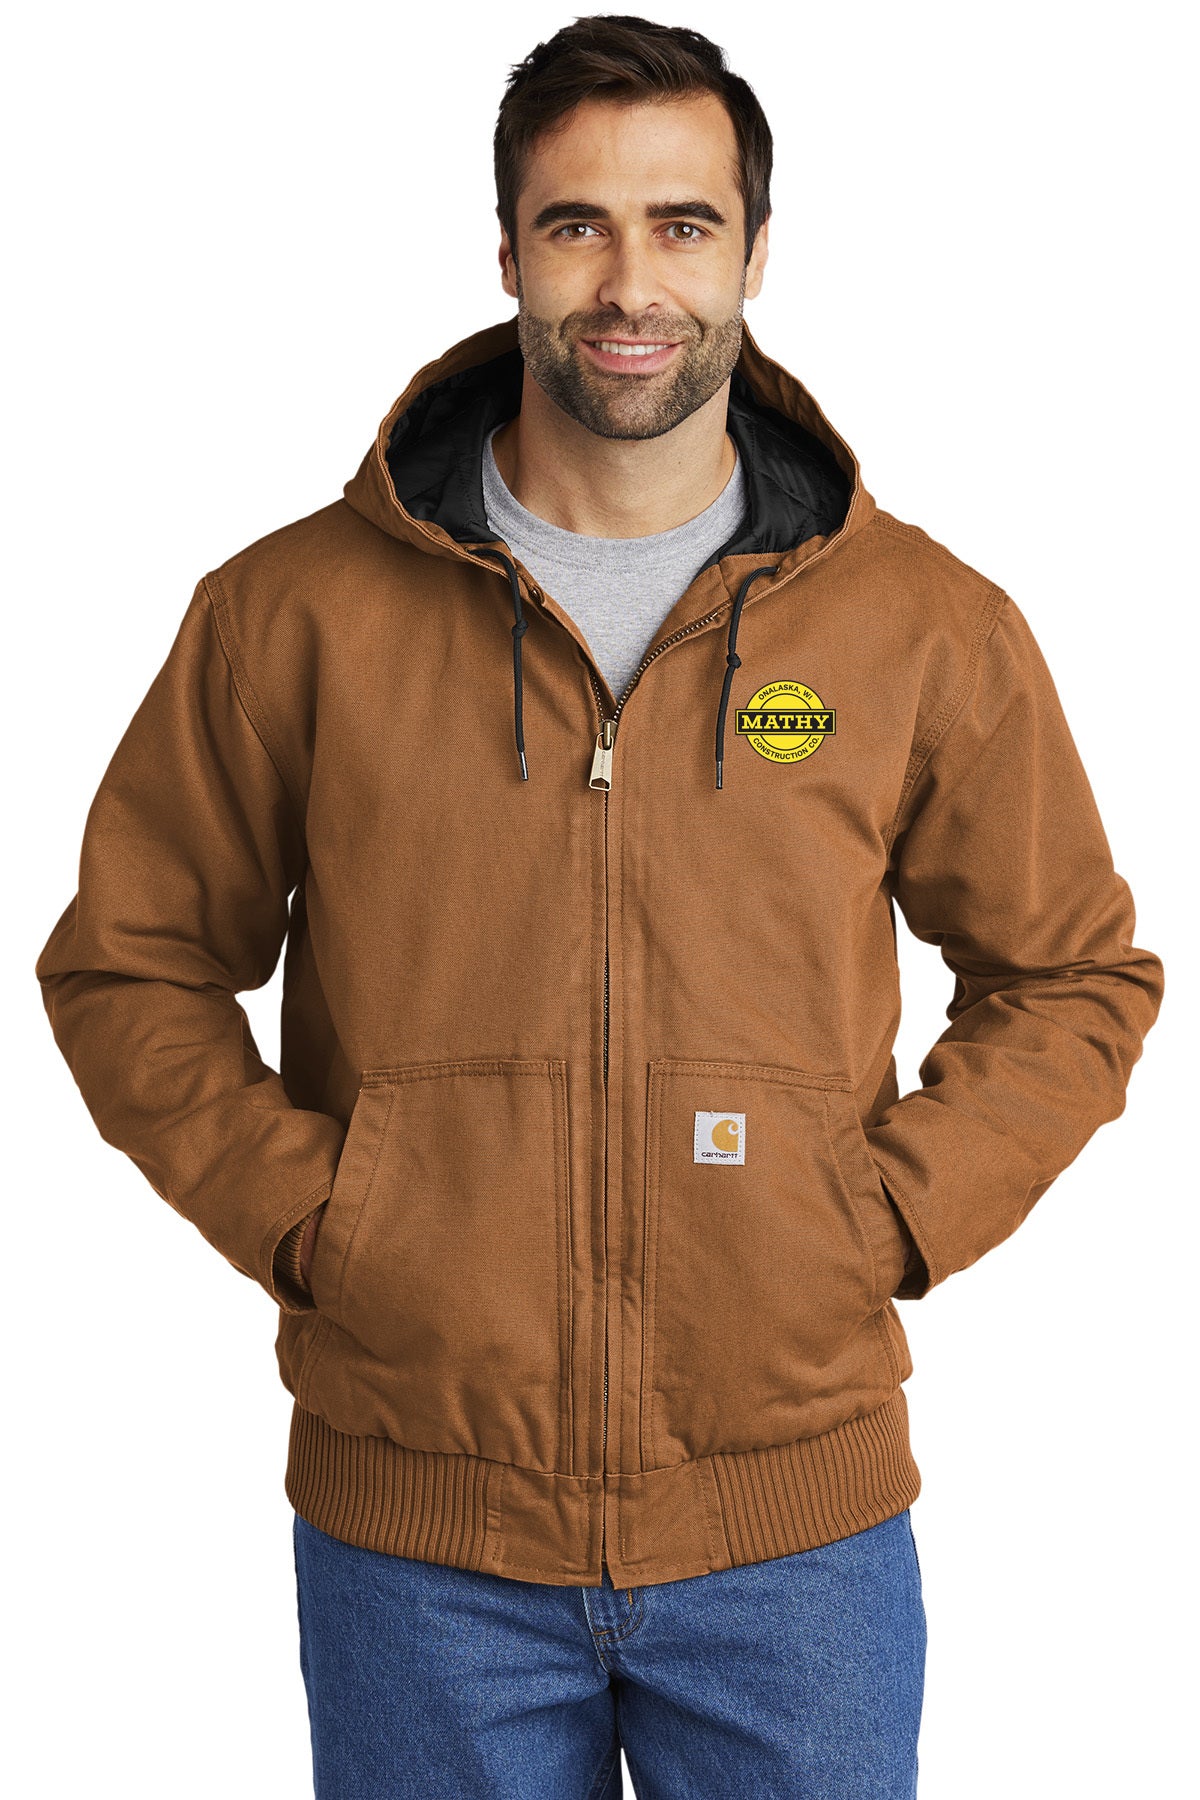 Mathy Construction Company Carhartt® Jacket